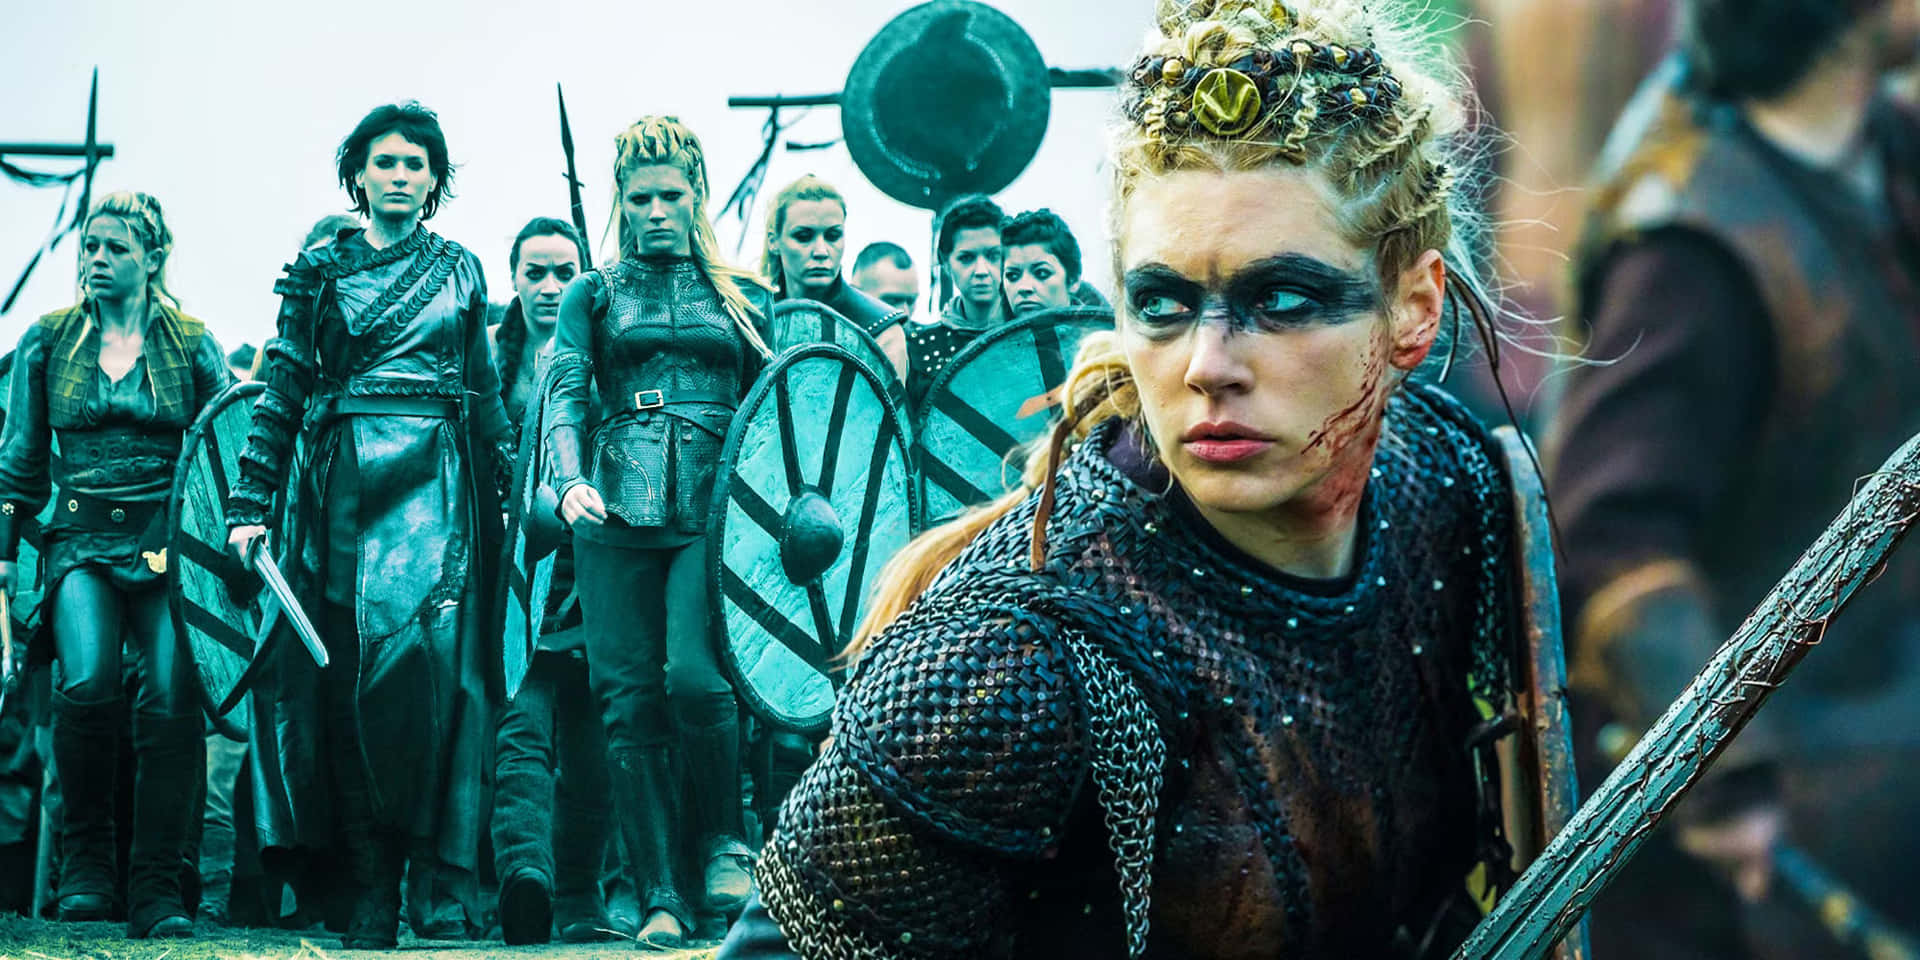 Fierce Female Viking Warrior In Battle